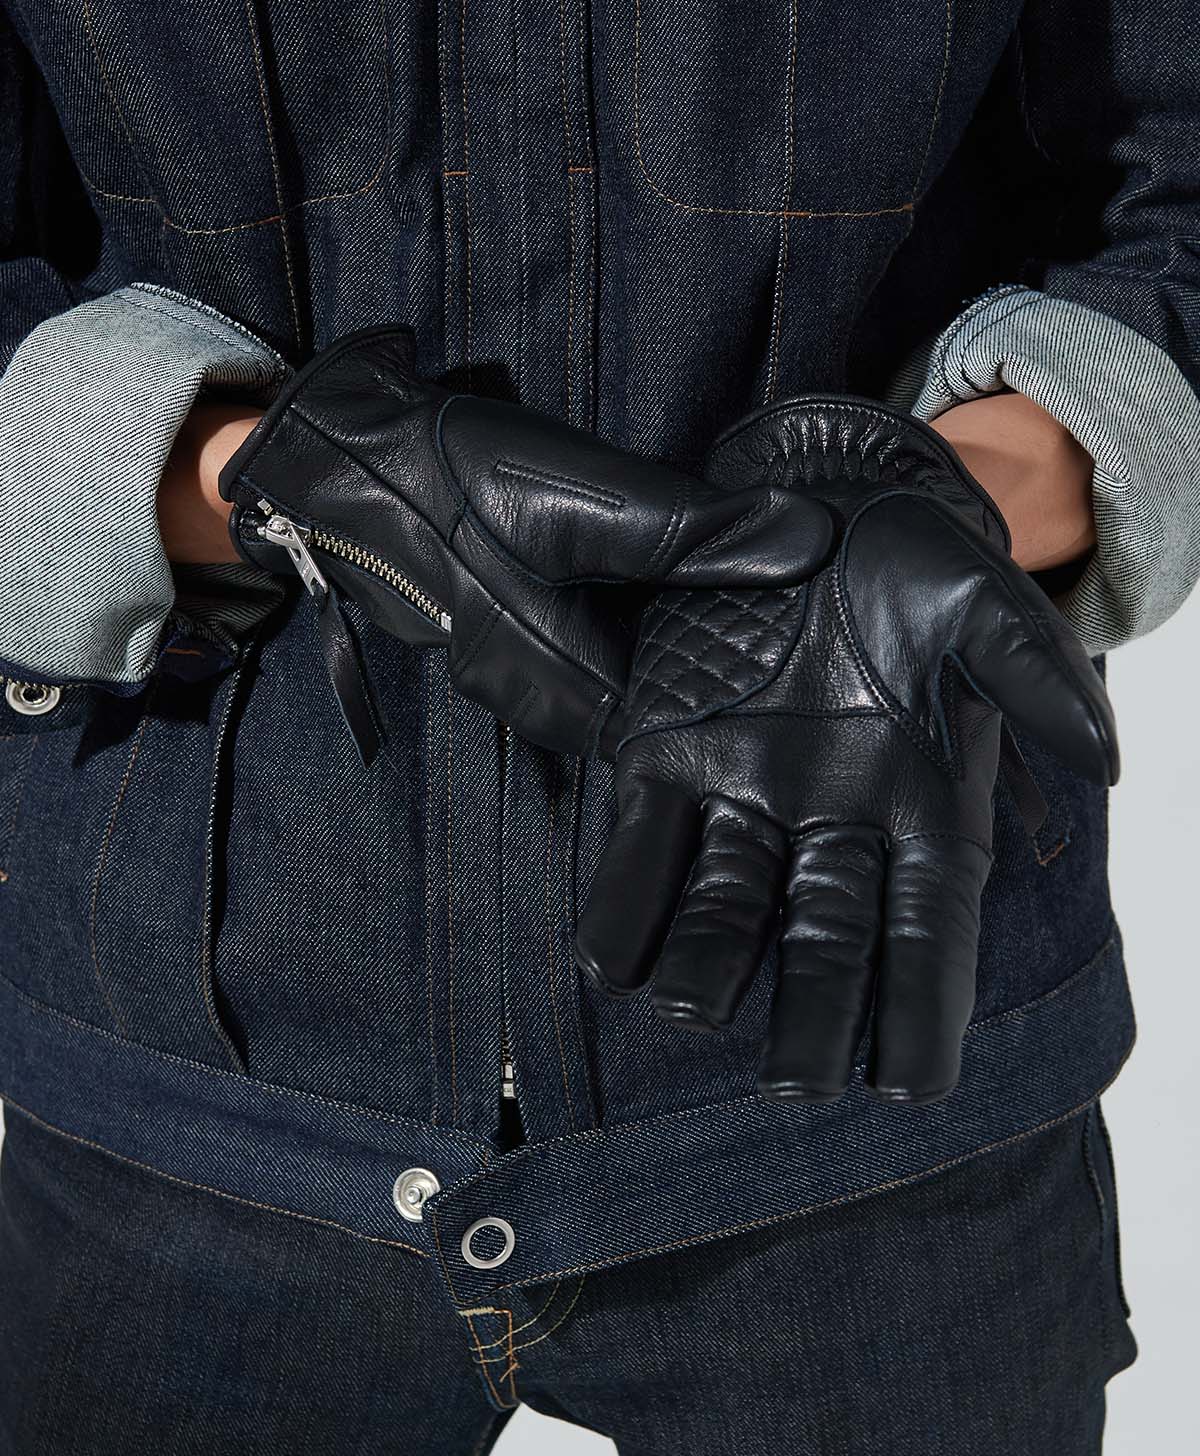 Rox Glove / Black